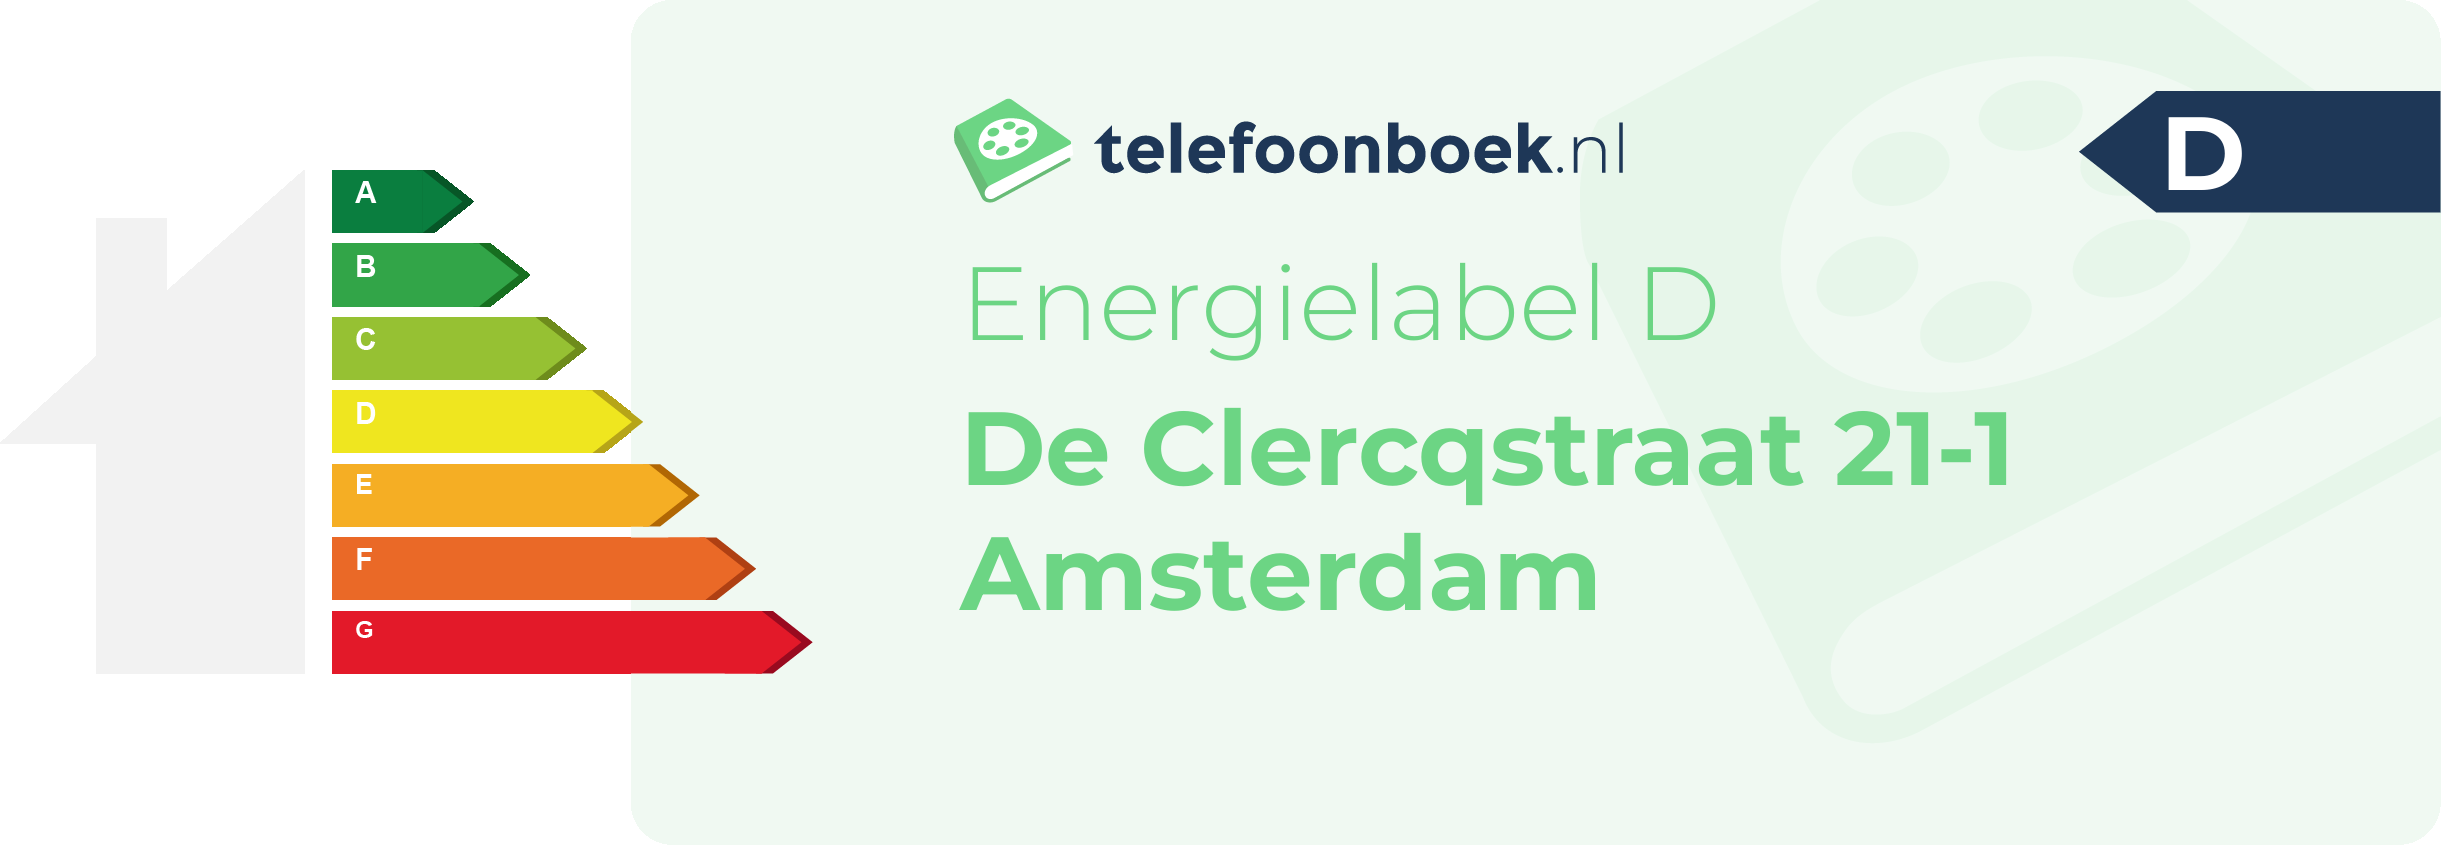 Energielabel De Clercqstraat 21-1 Amsterdam